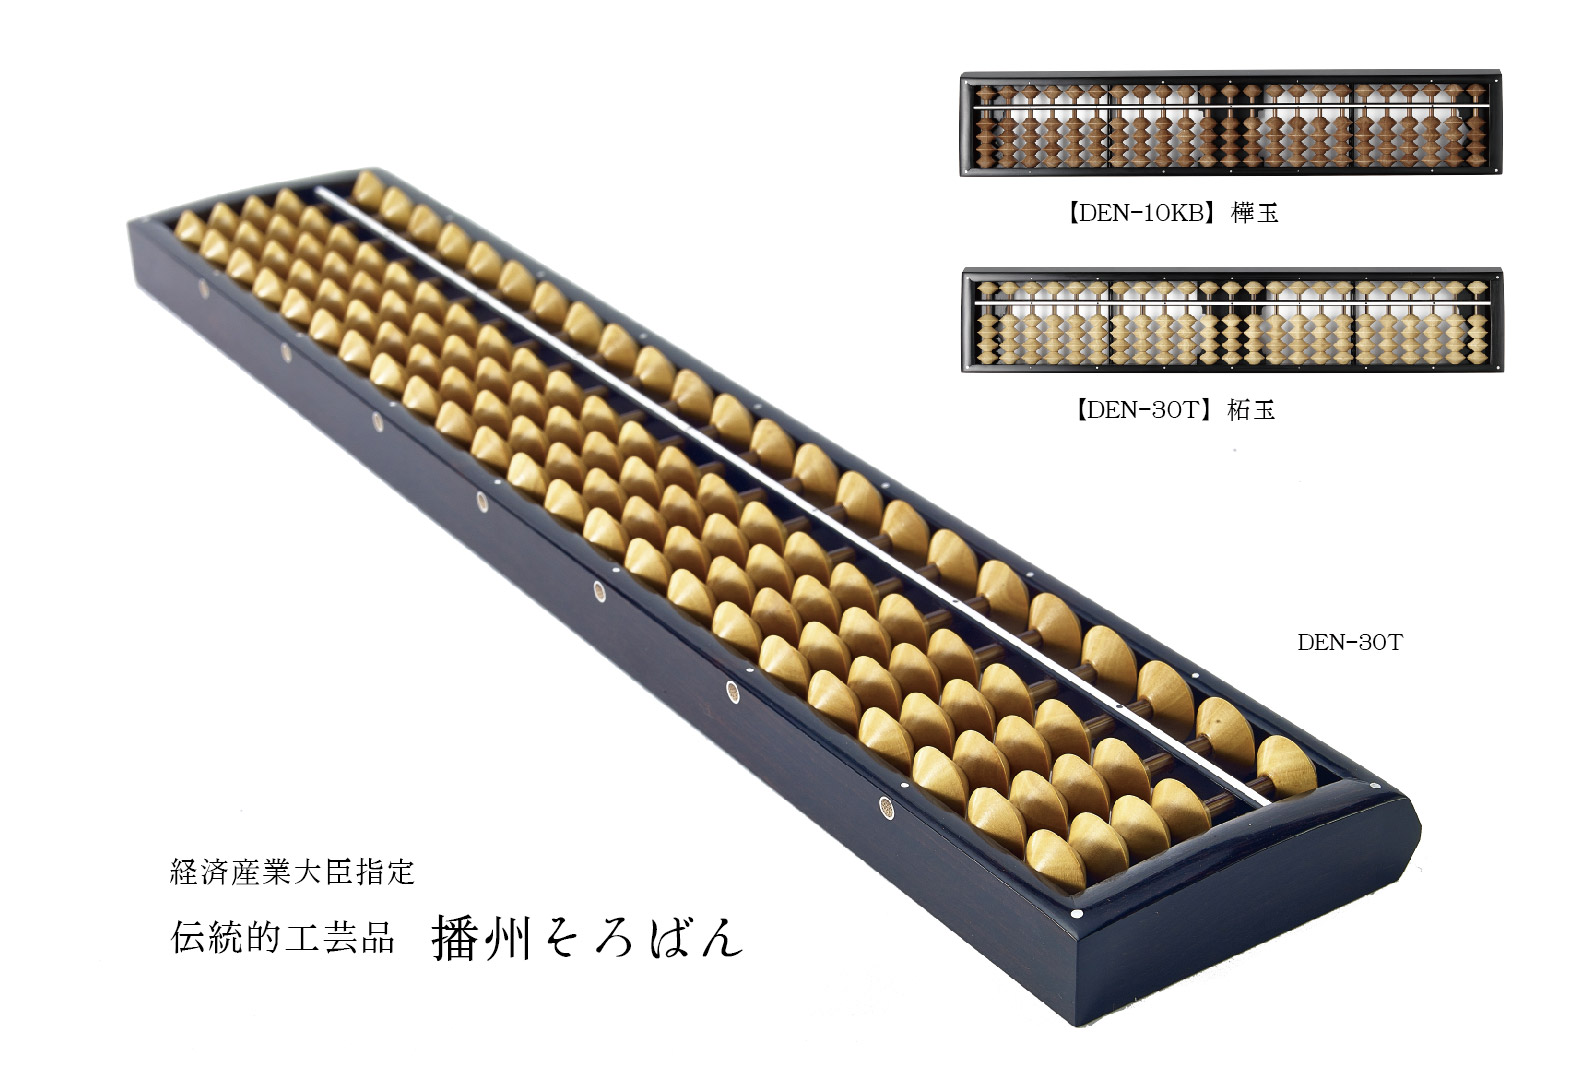 経済産業大臣指定 伝統的工芸品 播州そろばん(Traditional handicraft Banshu abacus) | 株式会社 DAIICHI（ダイイチ）